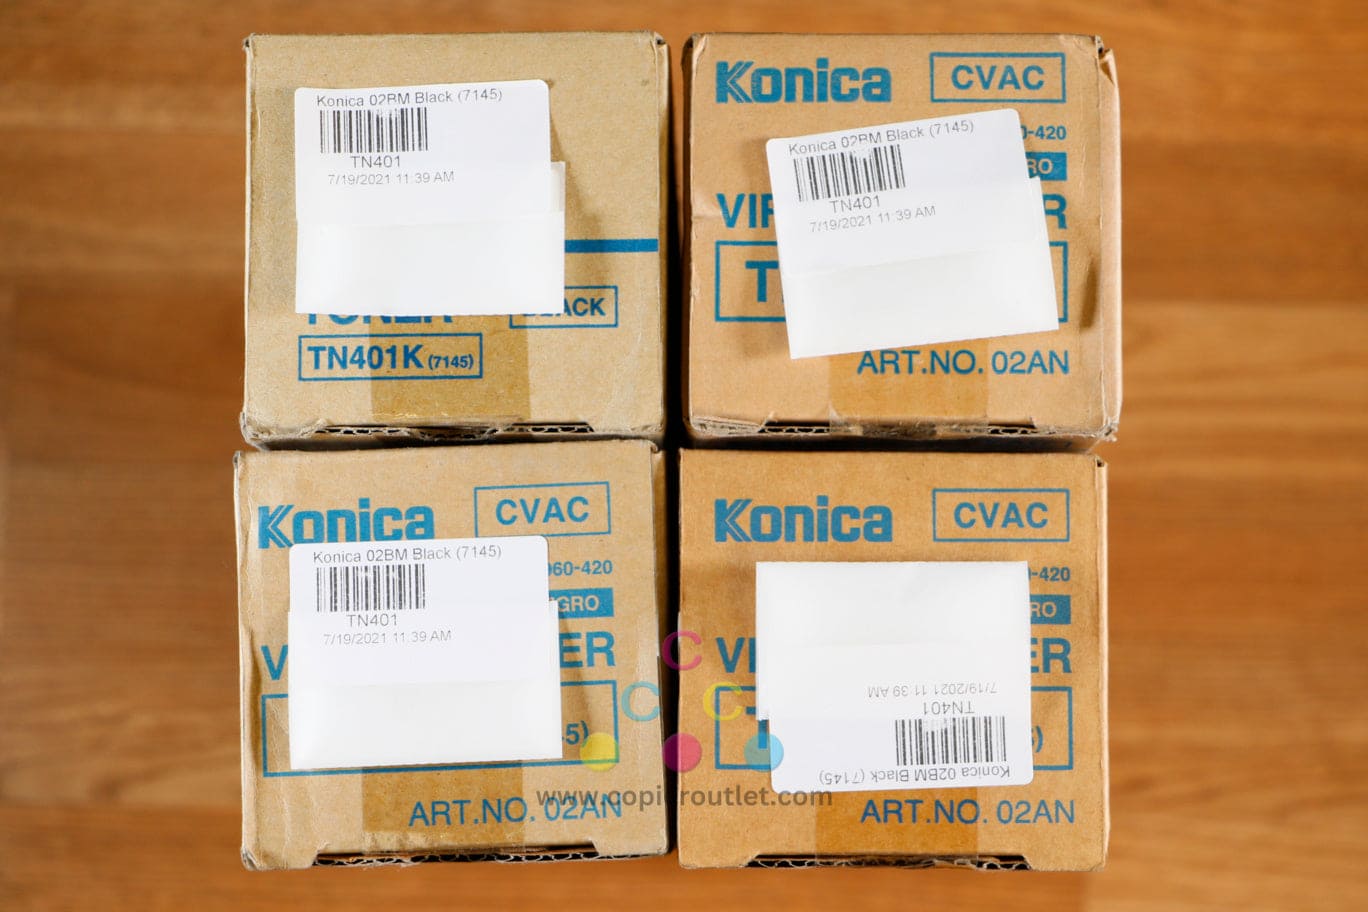 Lot of 4 Genuine Konica Minolta TN401K Black Toner Cartridges Bizhub 7145 960420